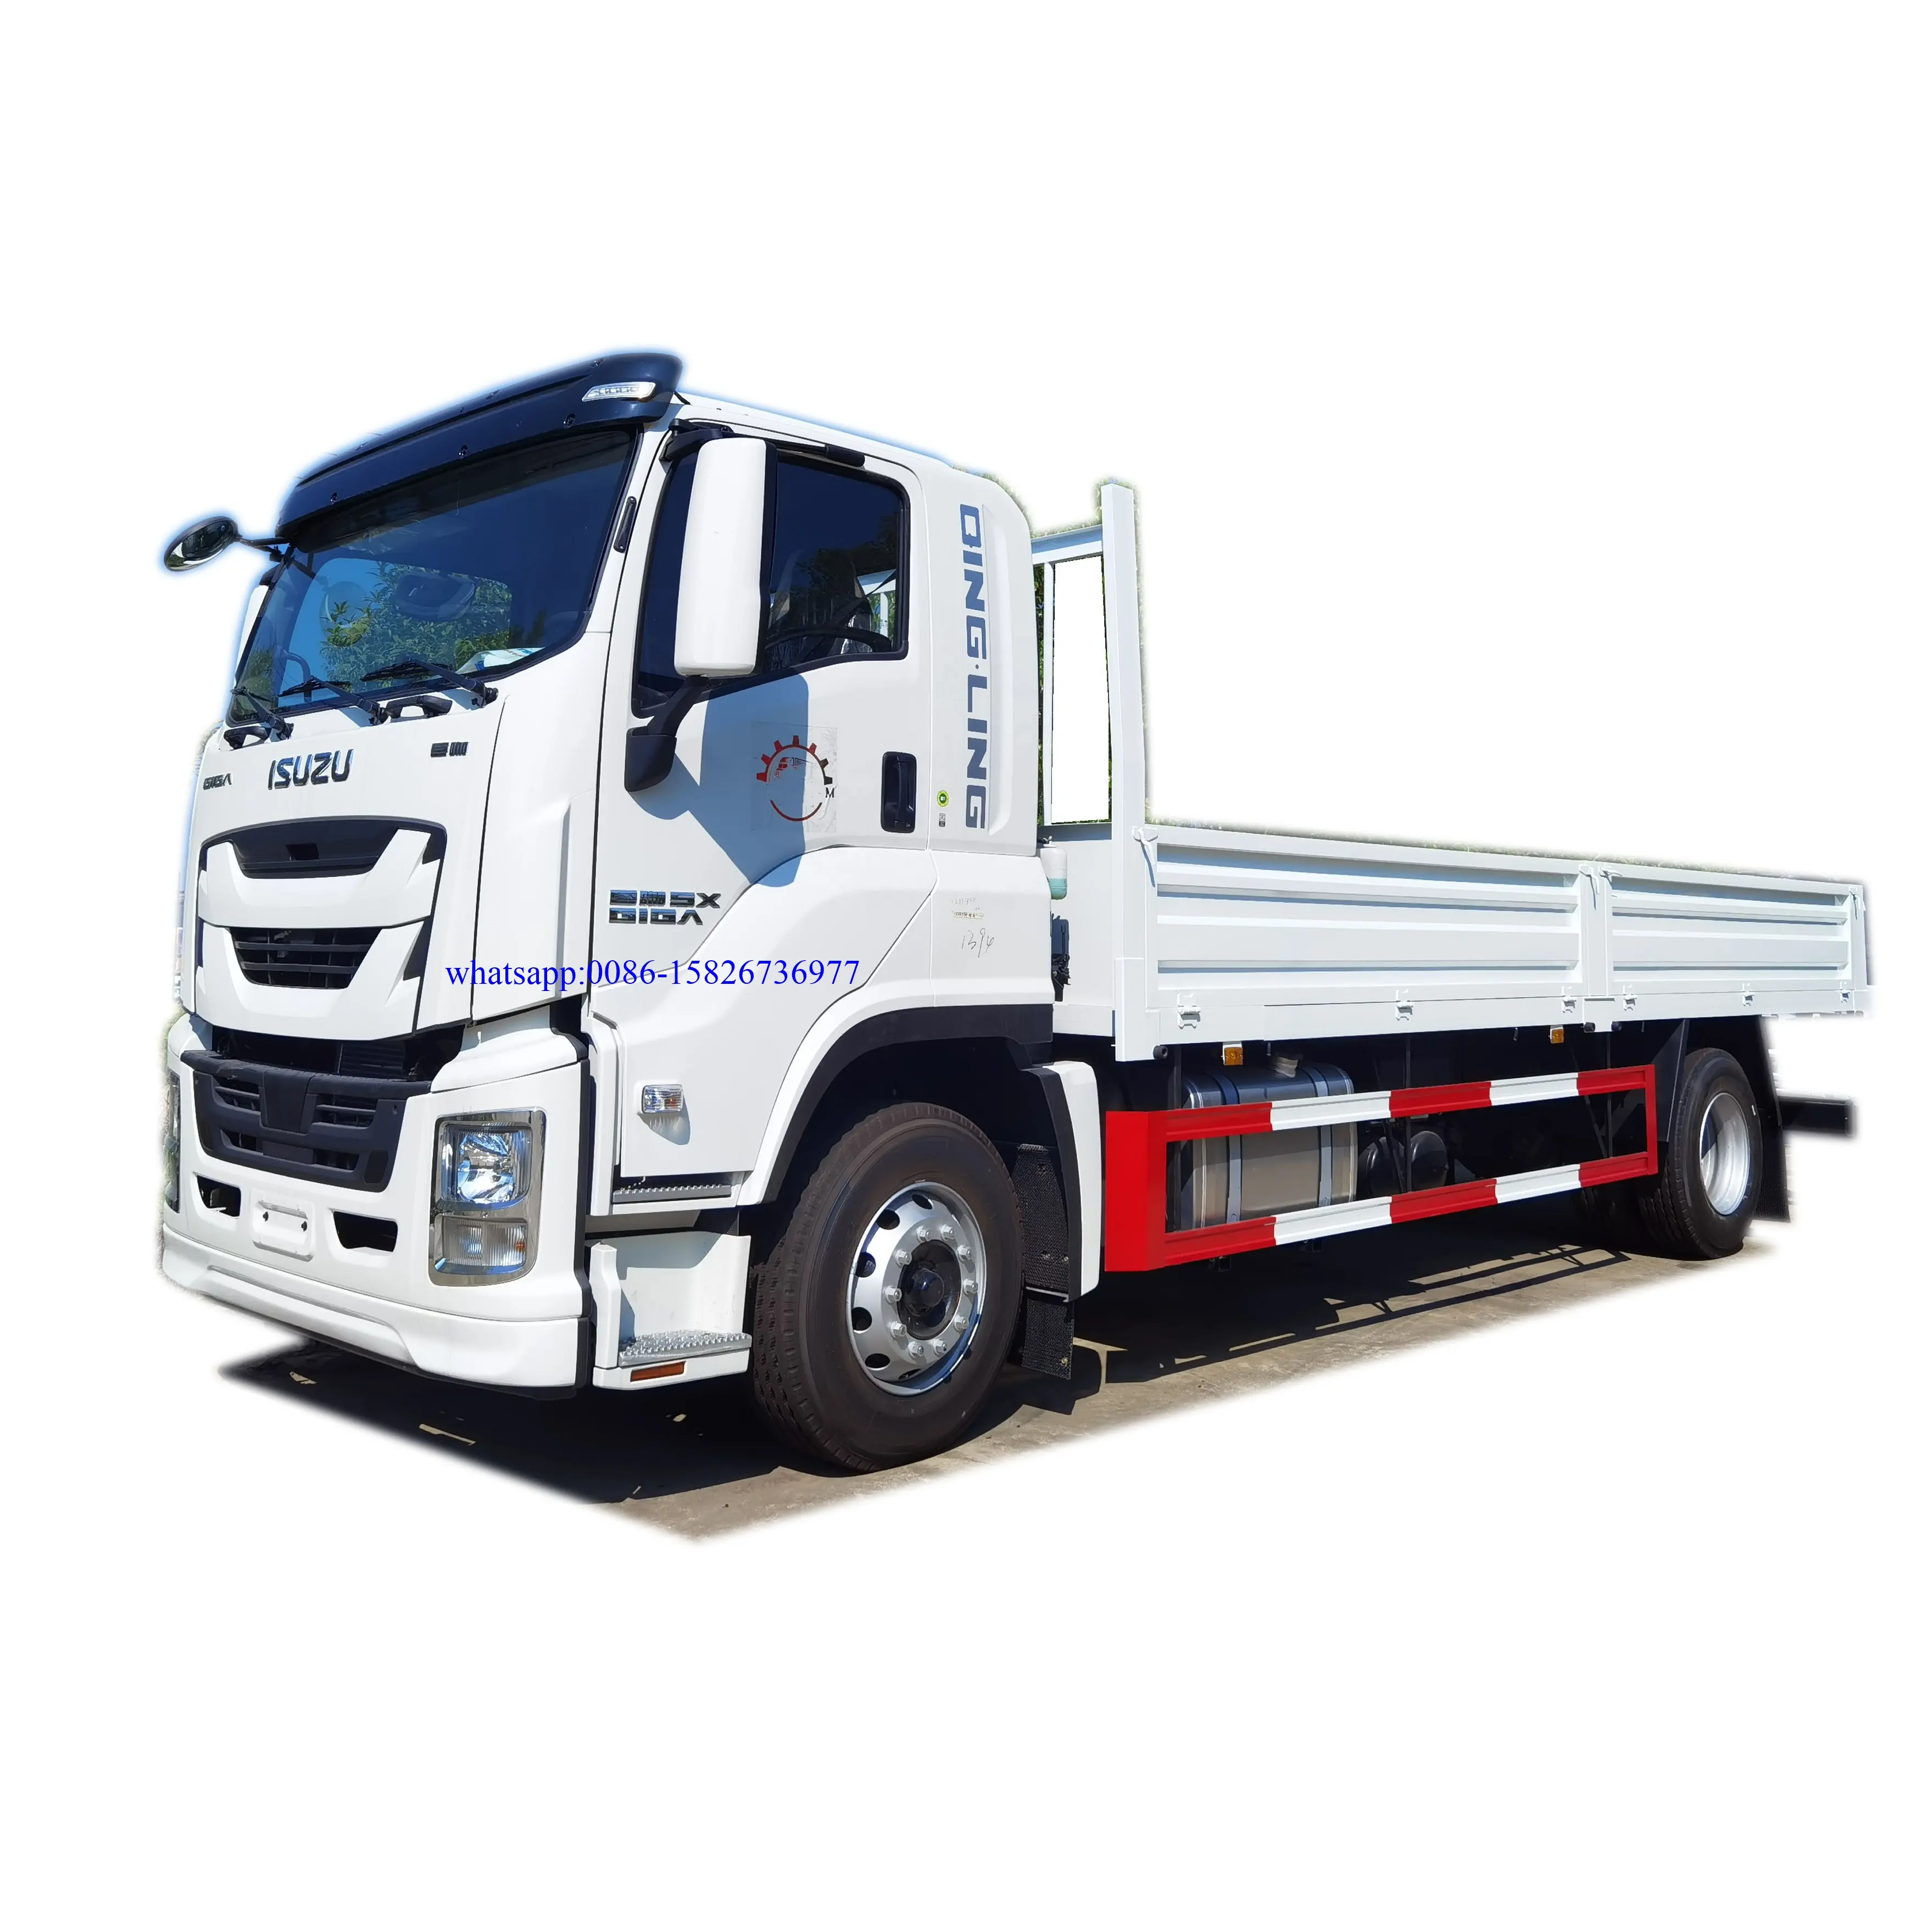 오리지널 일본 기가 12 톤 중장비 화물 밴 트럭 펜스 트럭 15 톤 ISUZU 화물 트럭 필리핀 판매